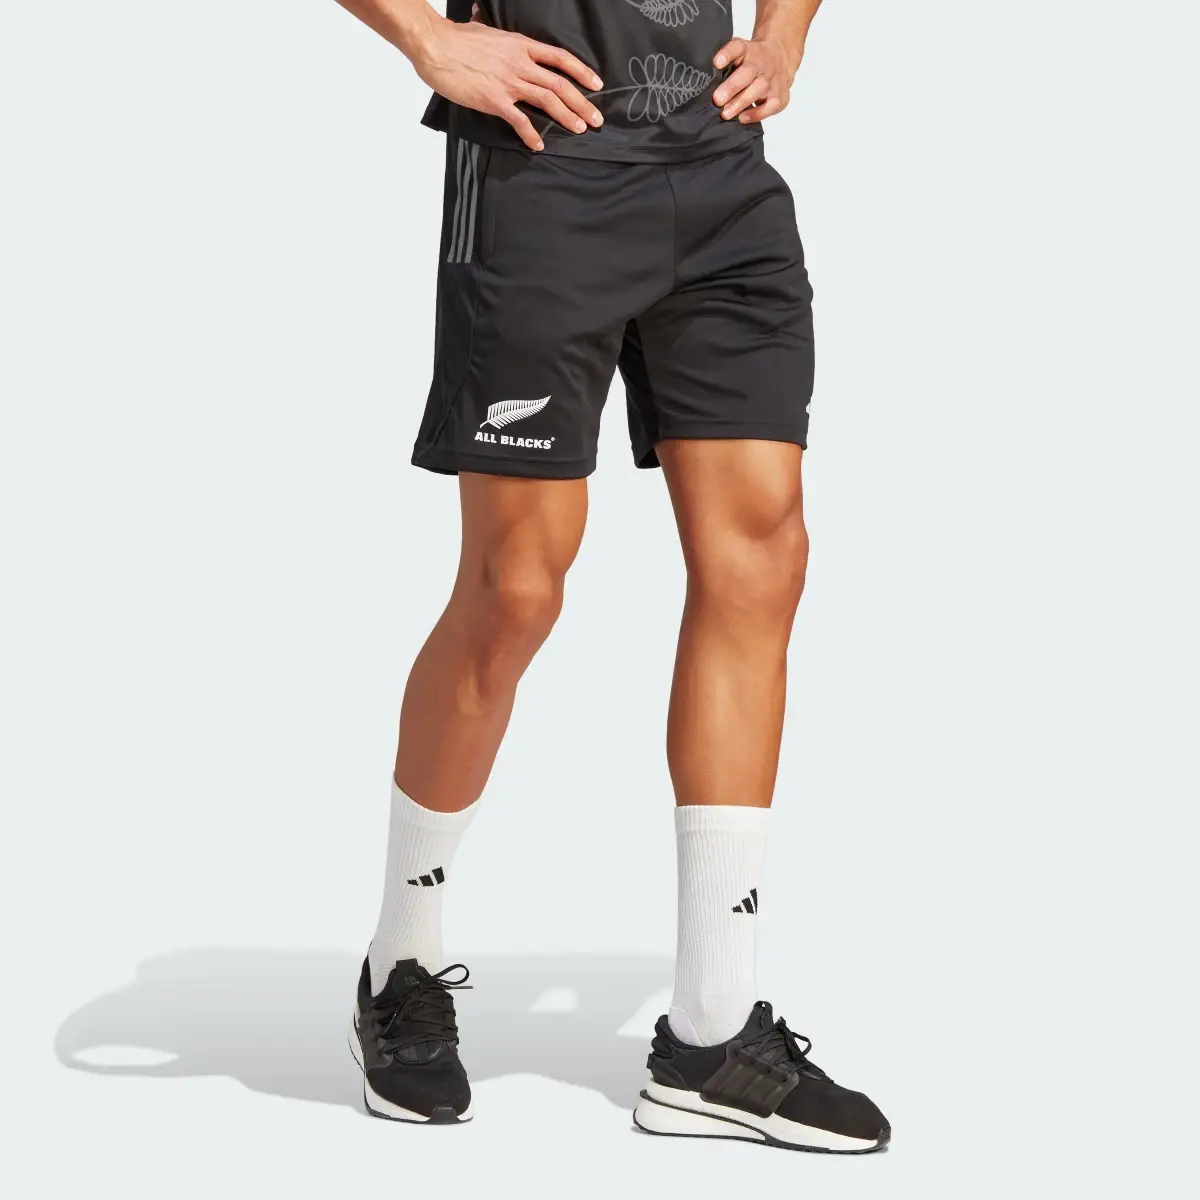 Adidas All Blacks Rugby Gym Shorts. 3